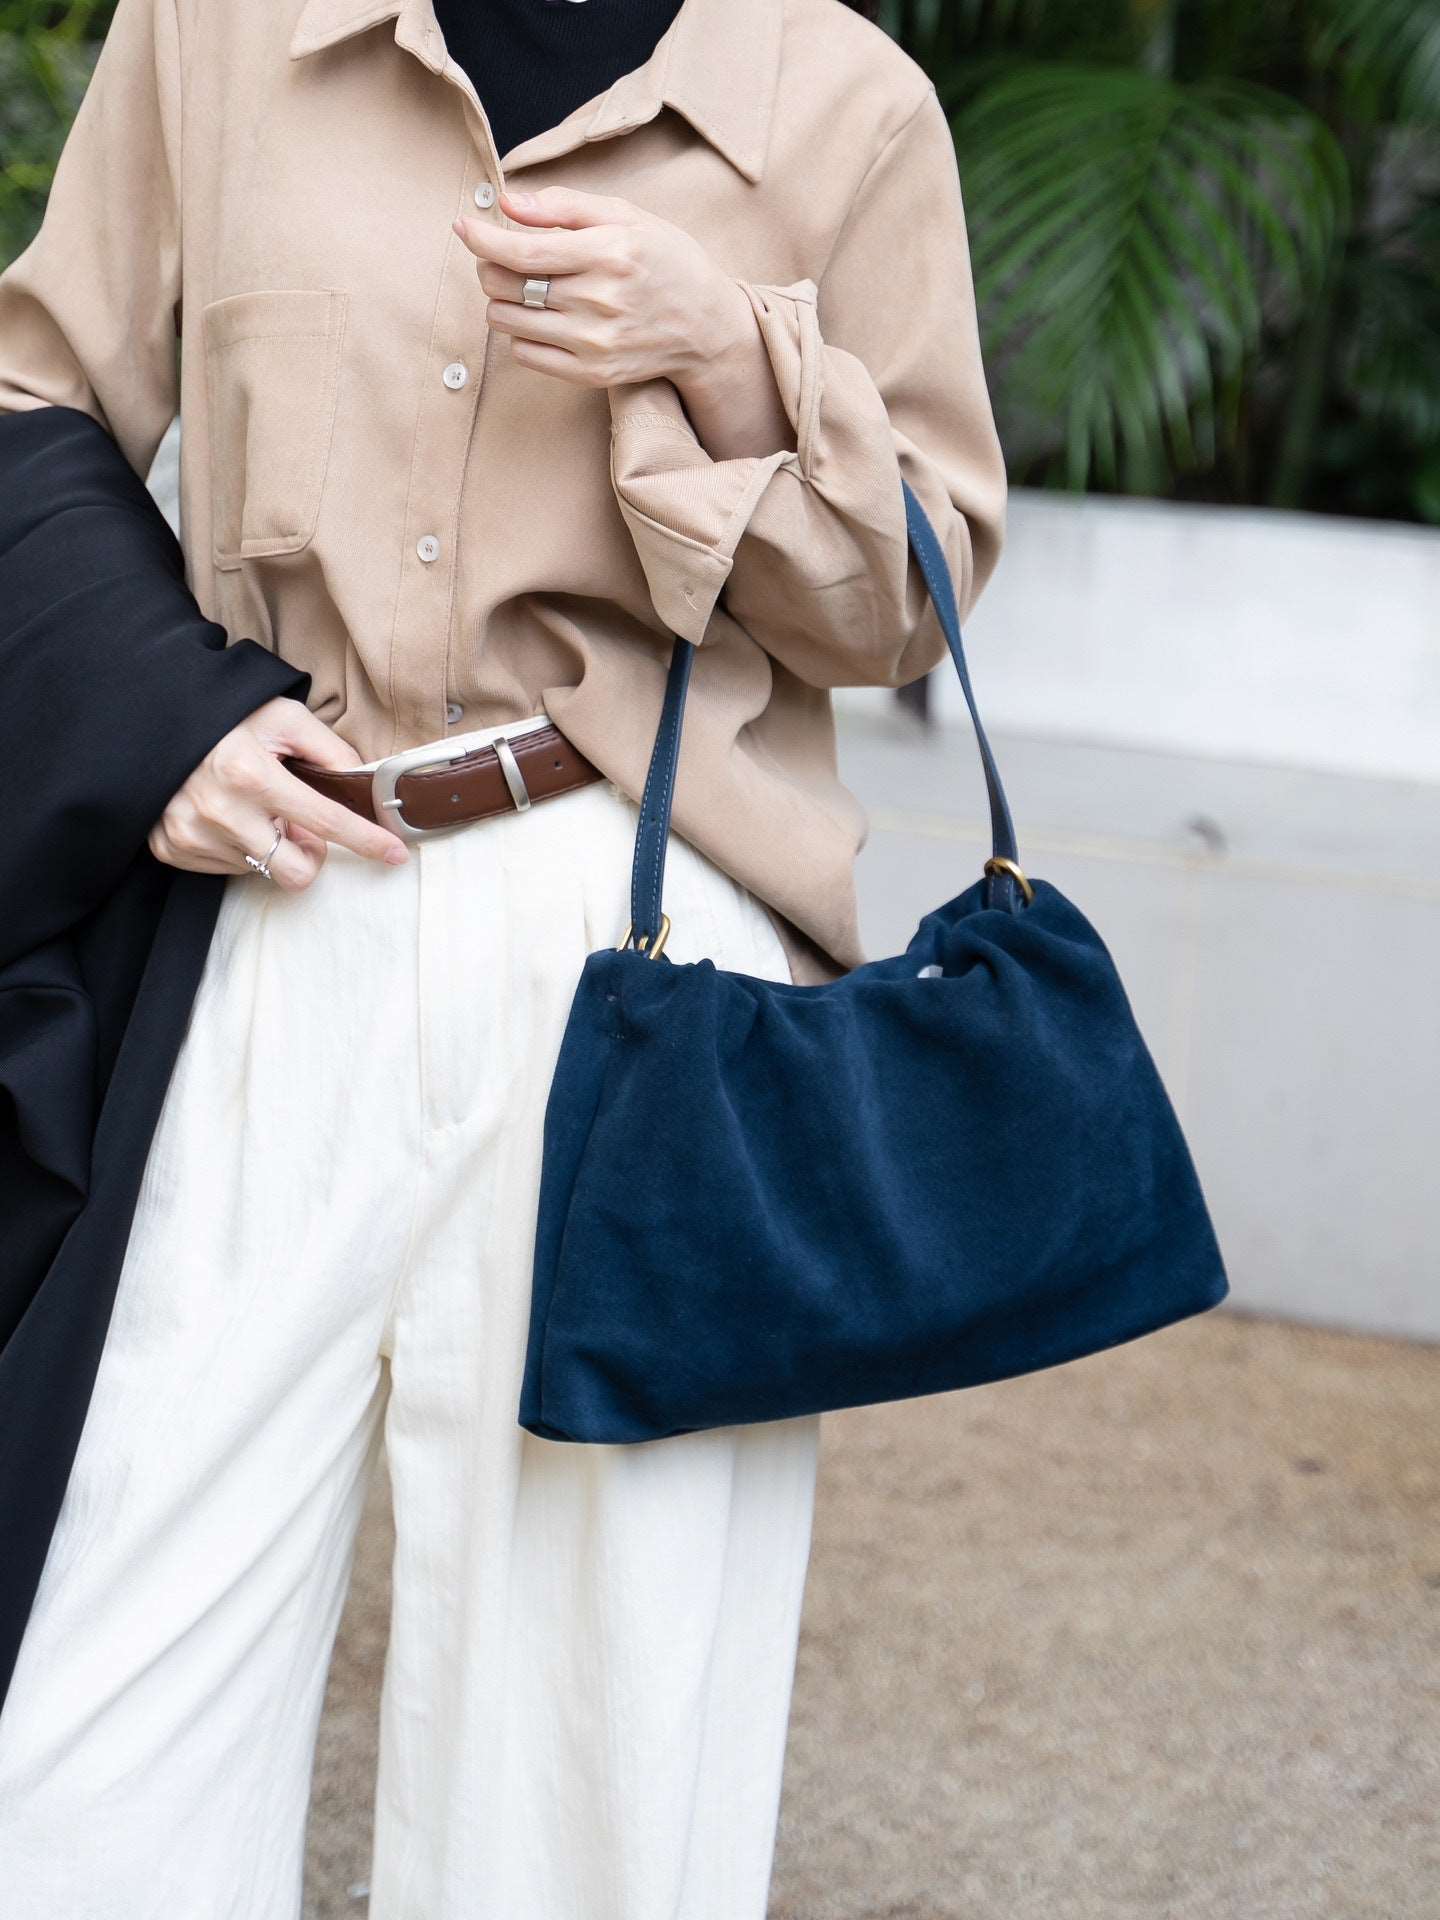 Exquisite Soft Leather Lady's Fashion Single Strap Handbag Elegant Crossbody Tote woyaza